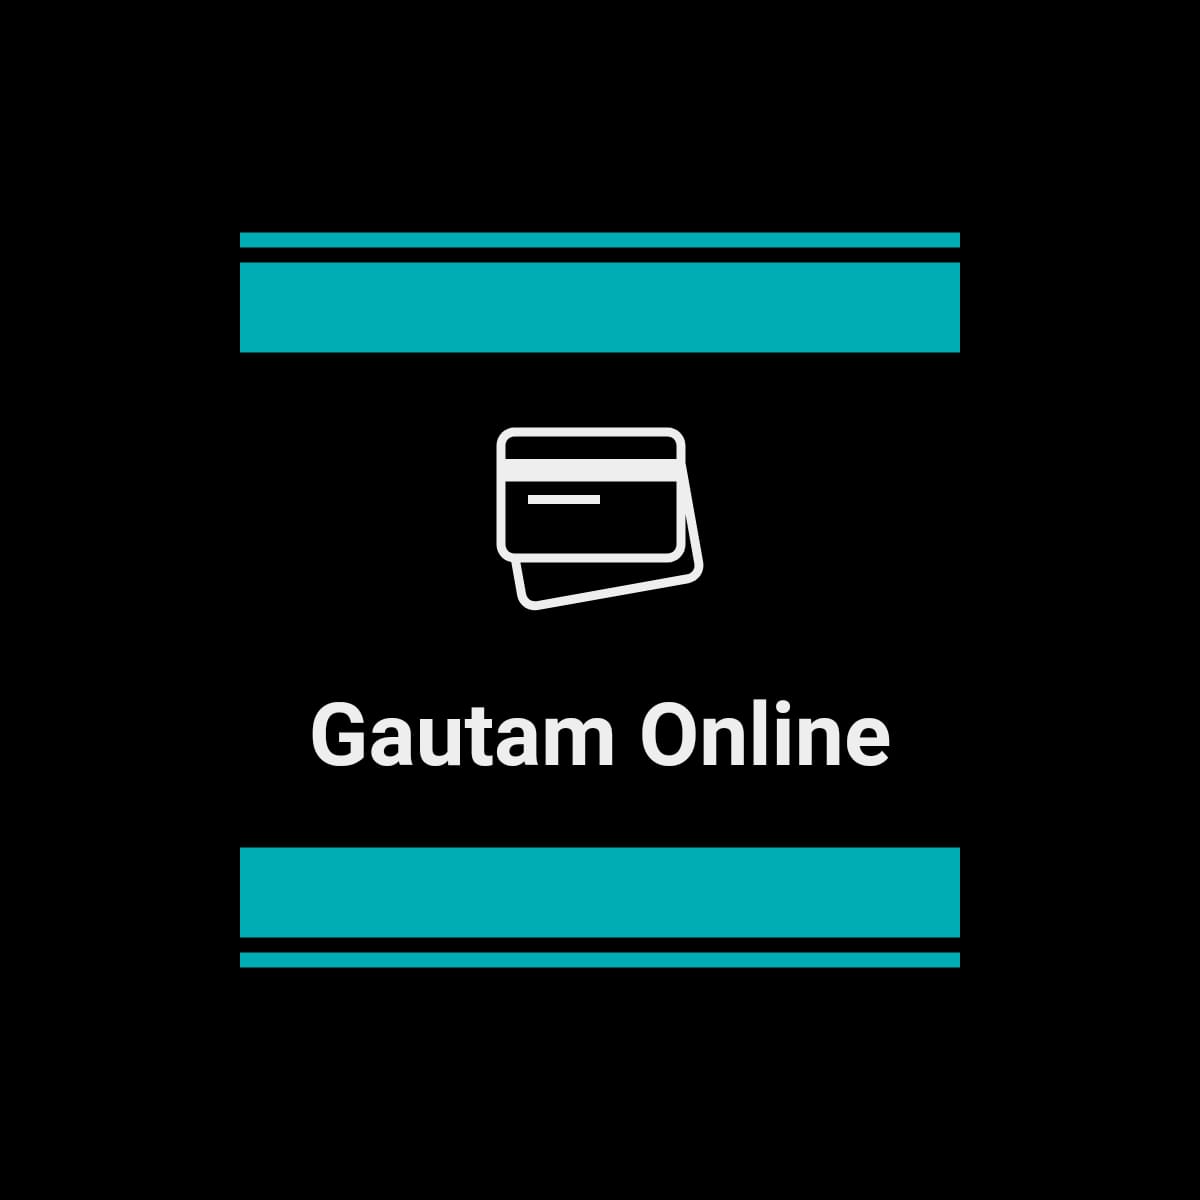 Gautam Online